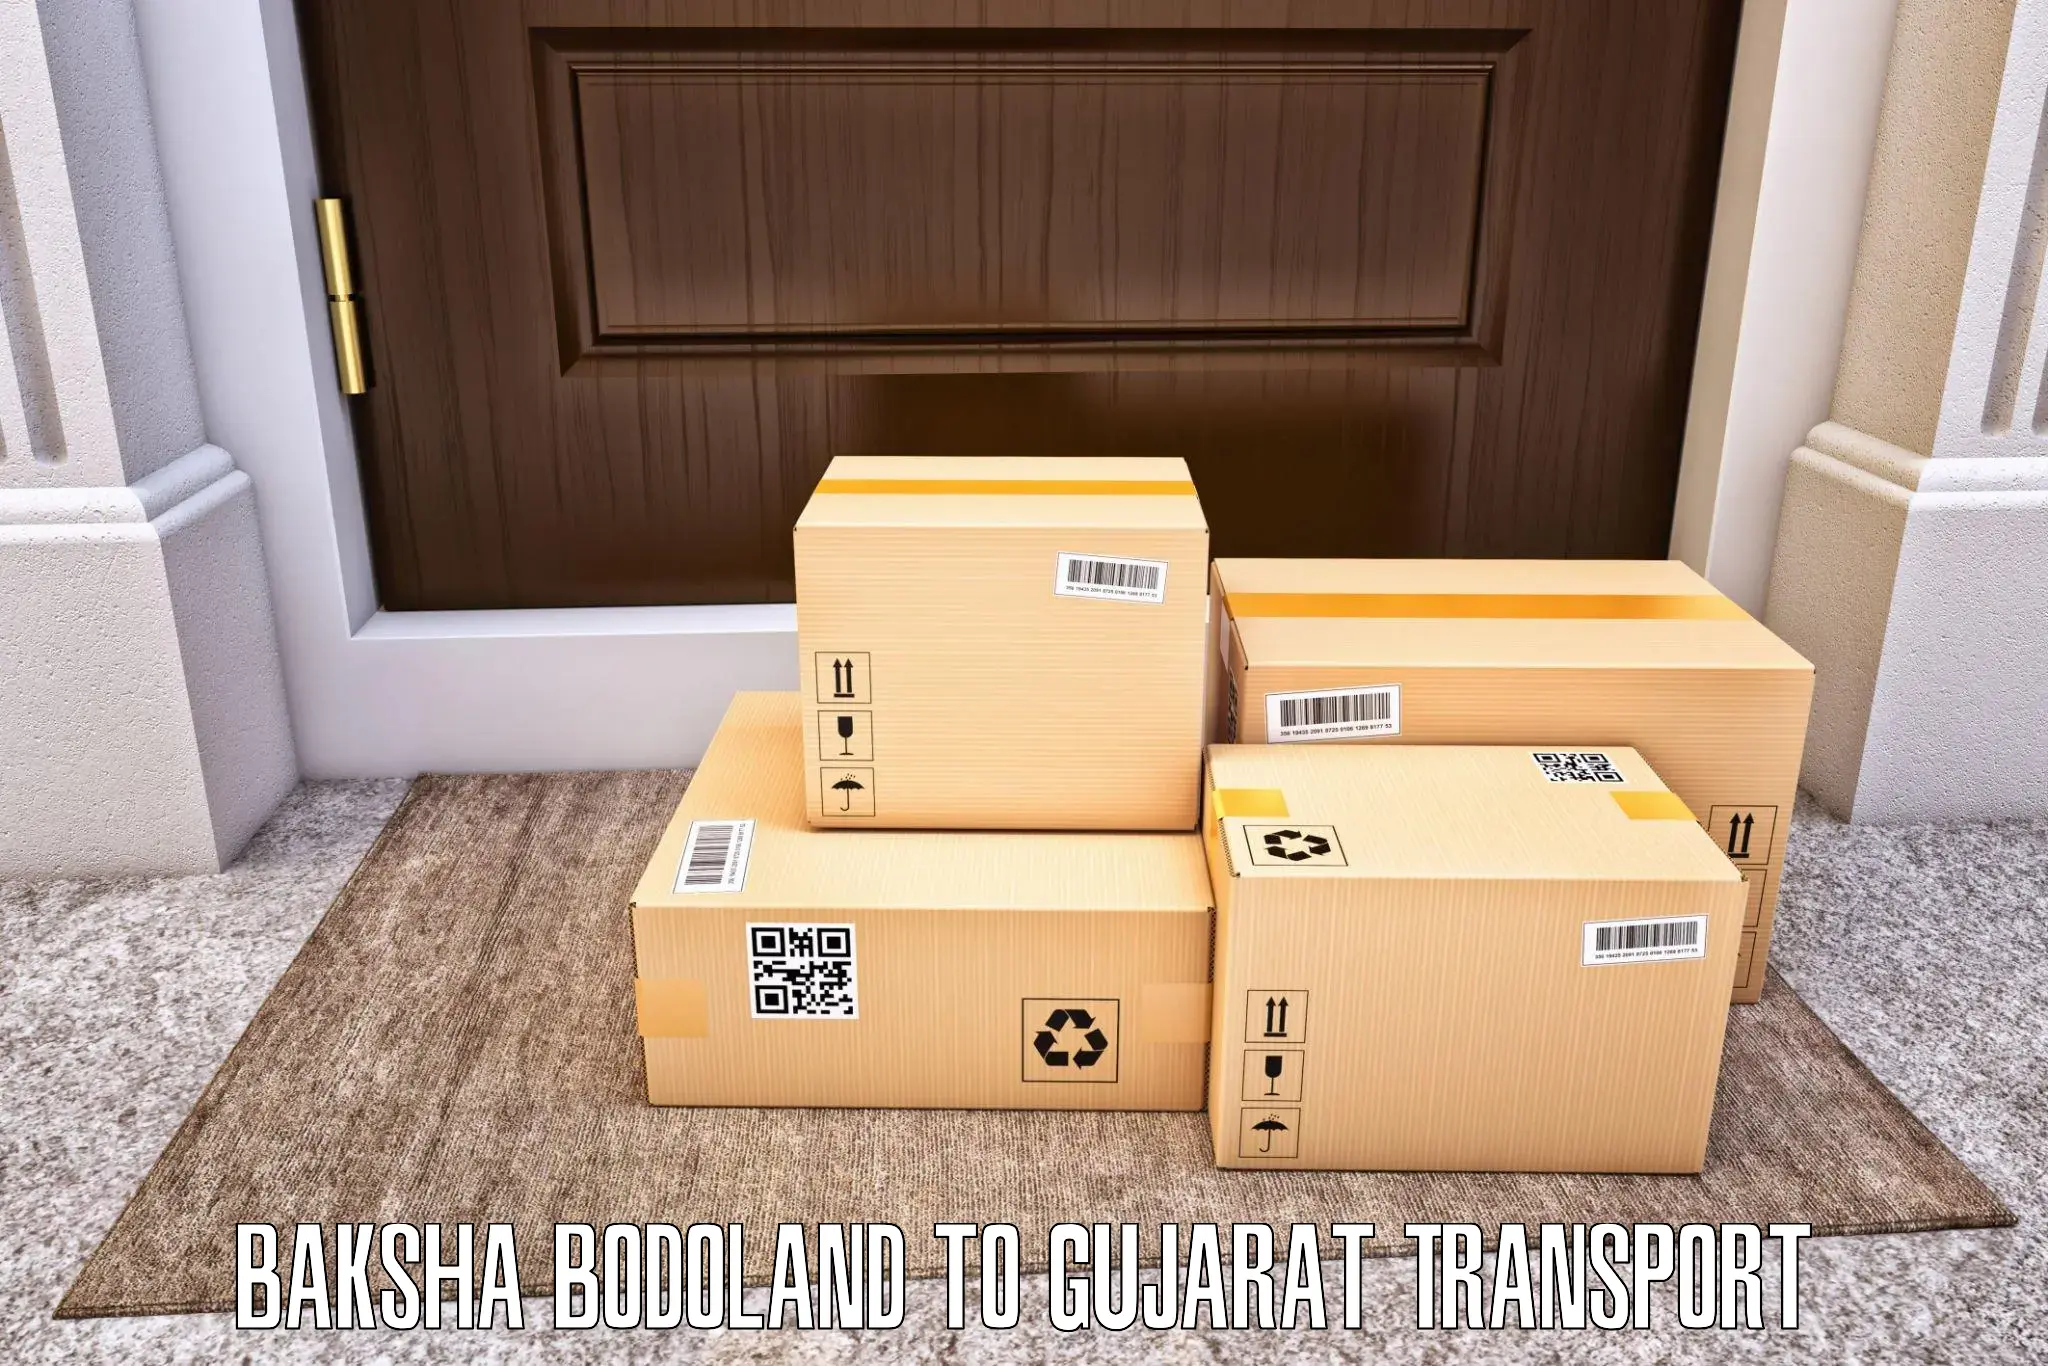 Cargo transportation services Baksha Bodoland to Chikhli